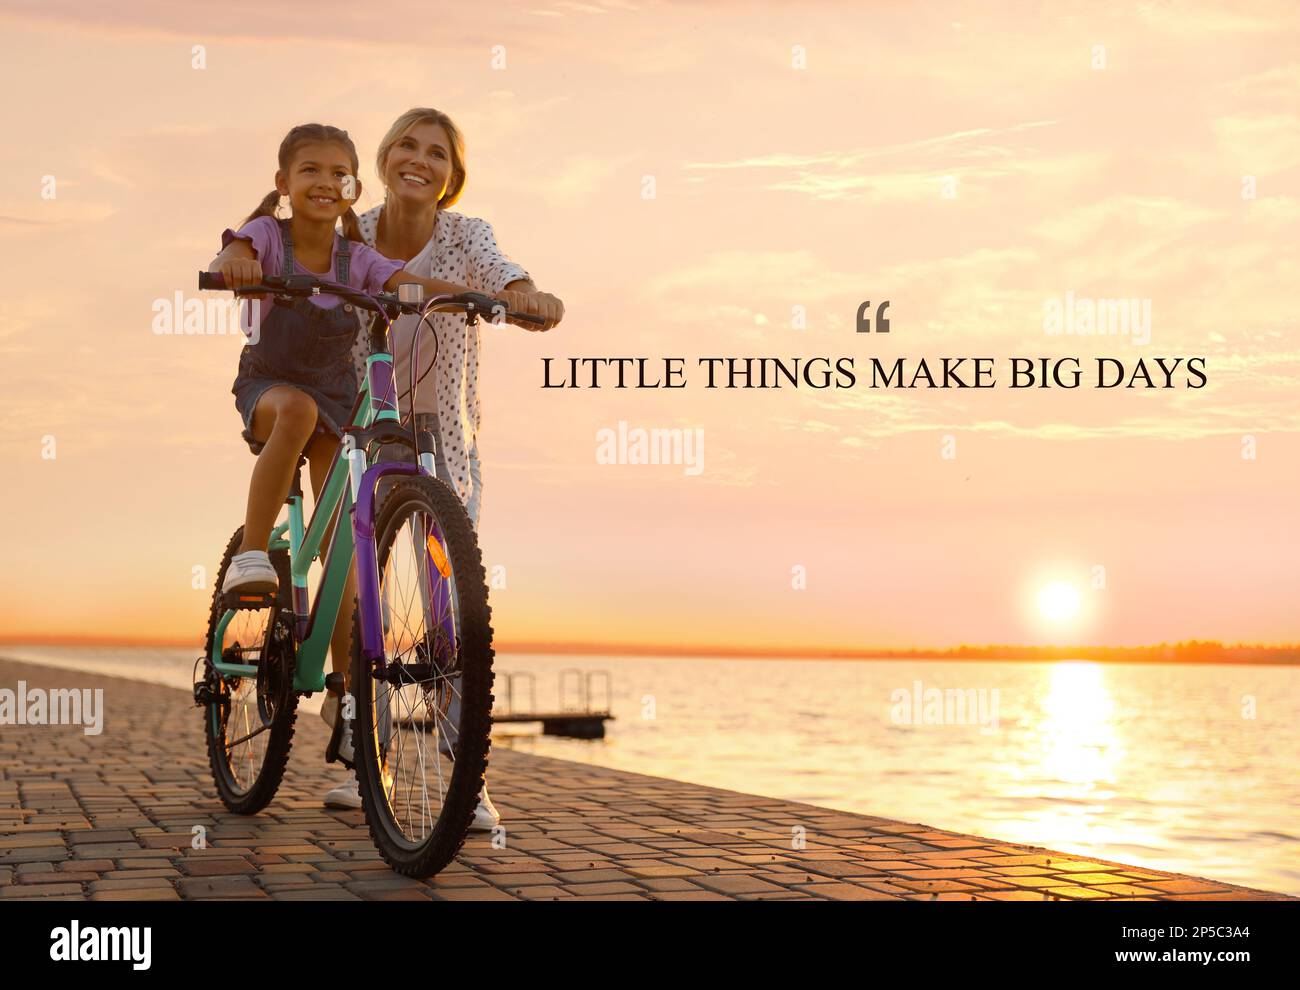 Kleine Dinge Machen Große Tage. Motivierendes Zitat, das daran erinnert, dass Momente der Freude, ein glückliches Leben aufzubauen, oder kleine Dinge jeden Tag große Ergebnisse bringen. Text A Stockfoto